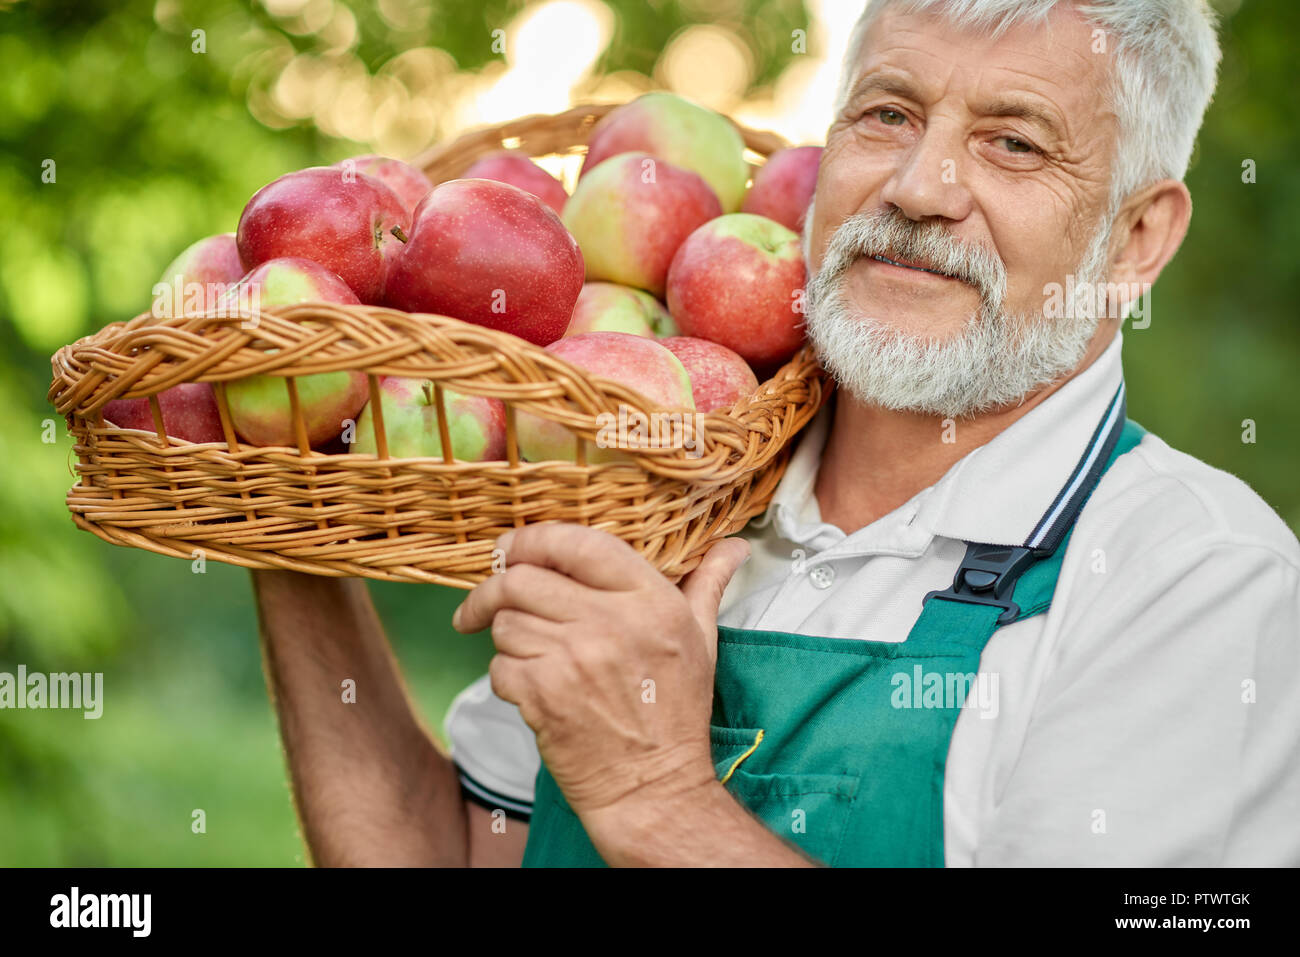 Chiusura del vecchio contadino con i capelli grigi tenendo premuto sulla sua spalla cesto pieno di mele fresche. Uomo che guarda la fotocamera e sorridente. Giardiniere barbuto indossando tute verde e bianco di t-shirt. Foto Stock